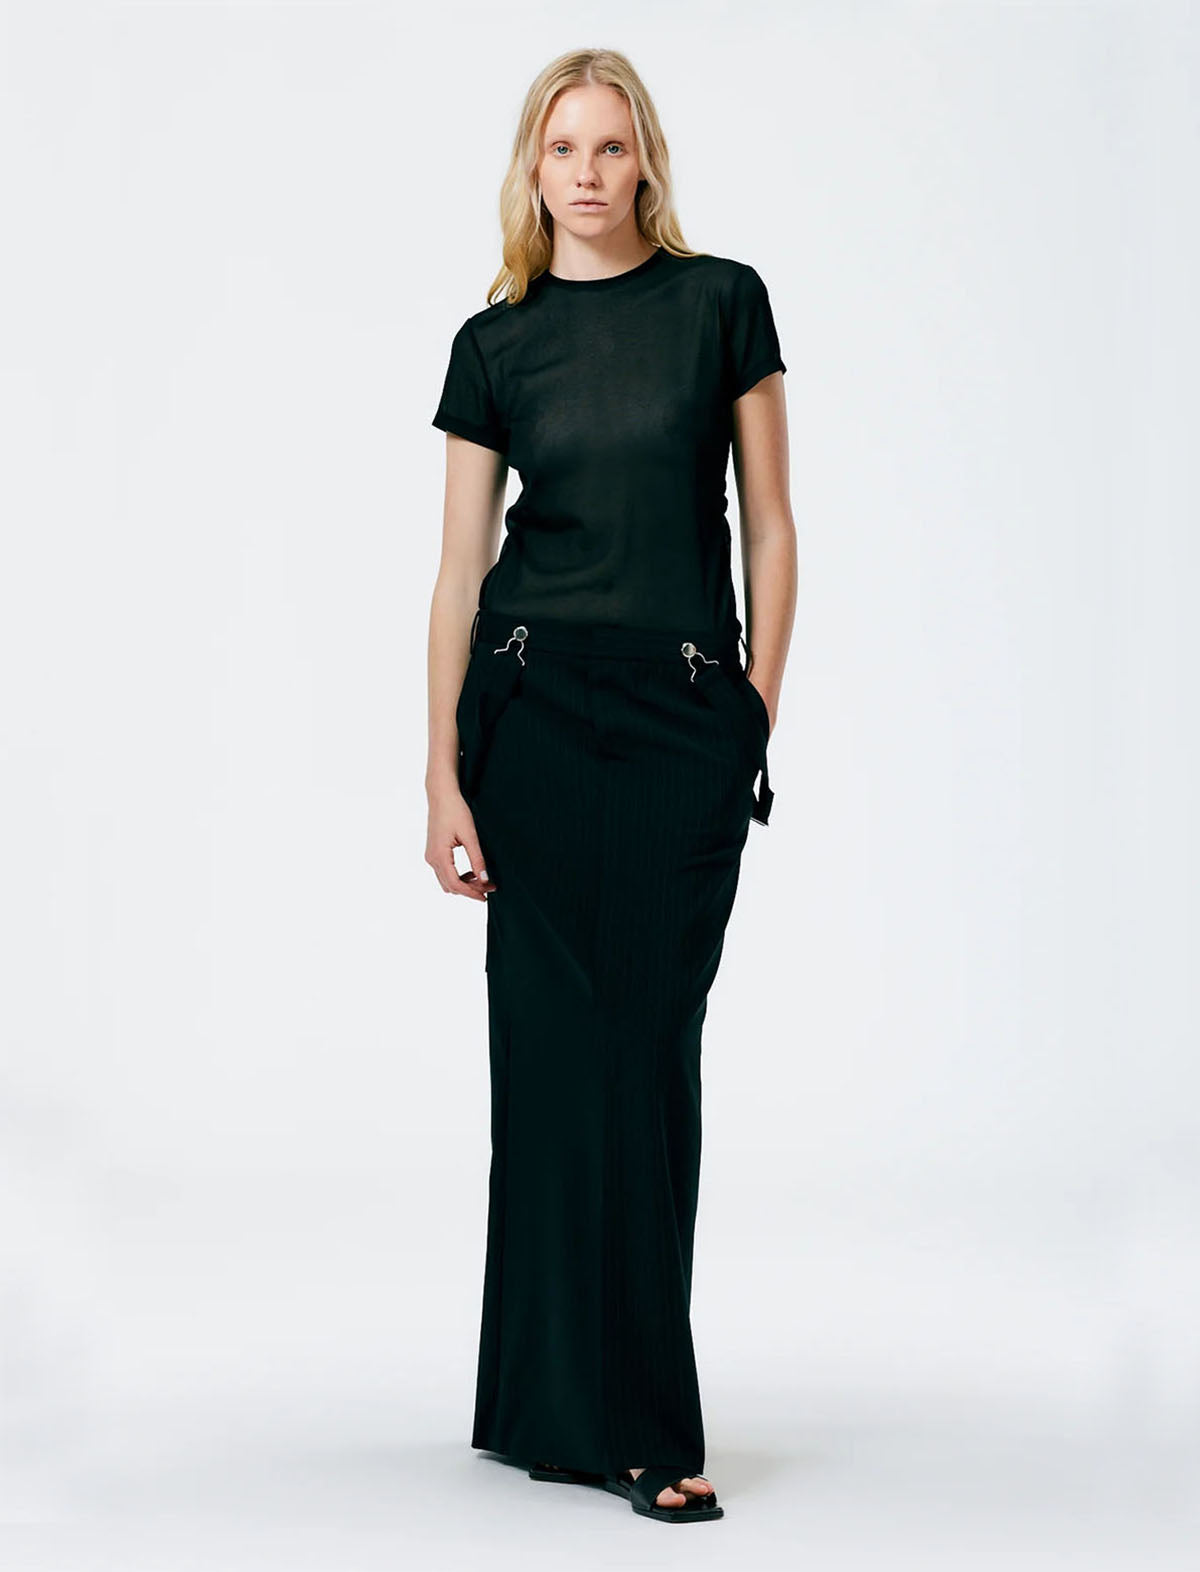 TIBI Dominic Pinstripe Overall Skirt in Black/White Multi